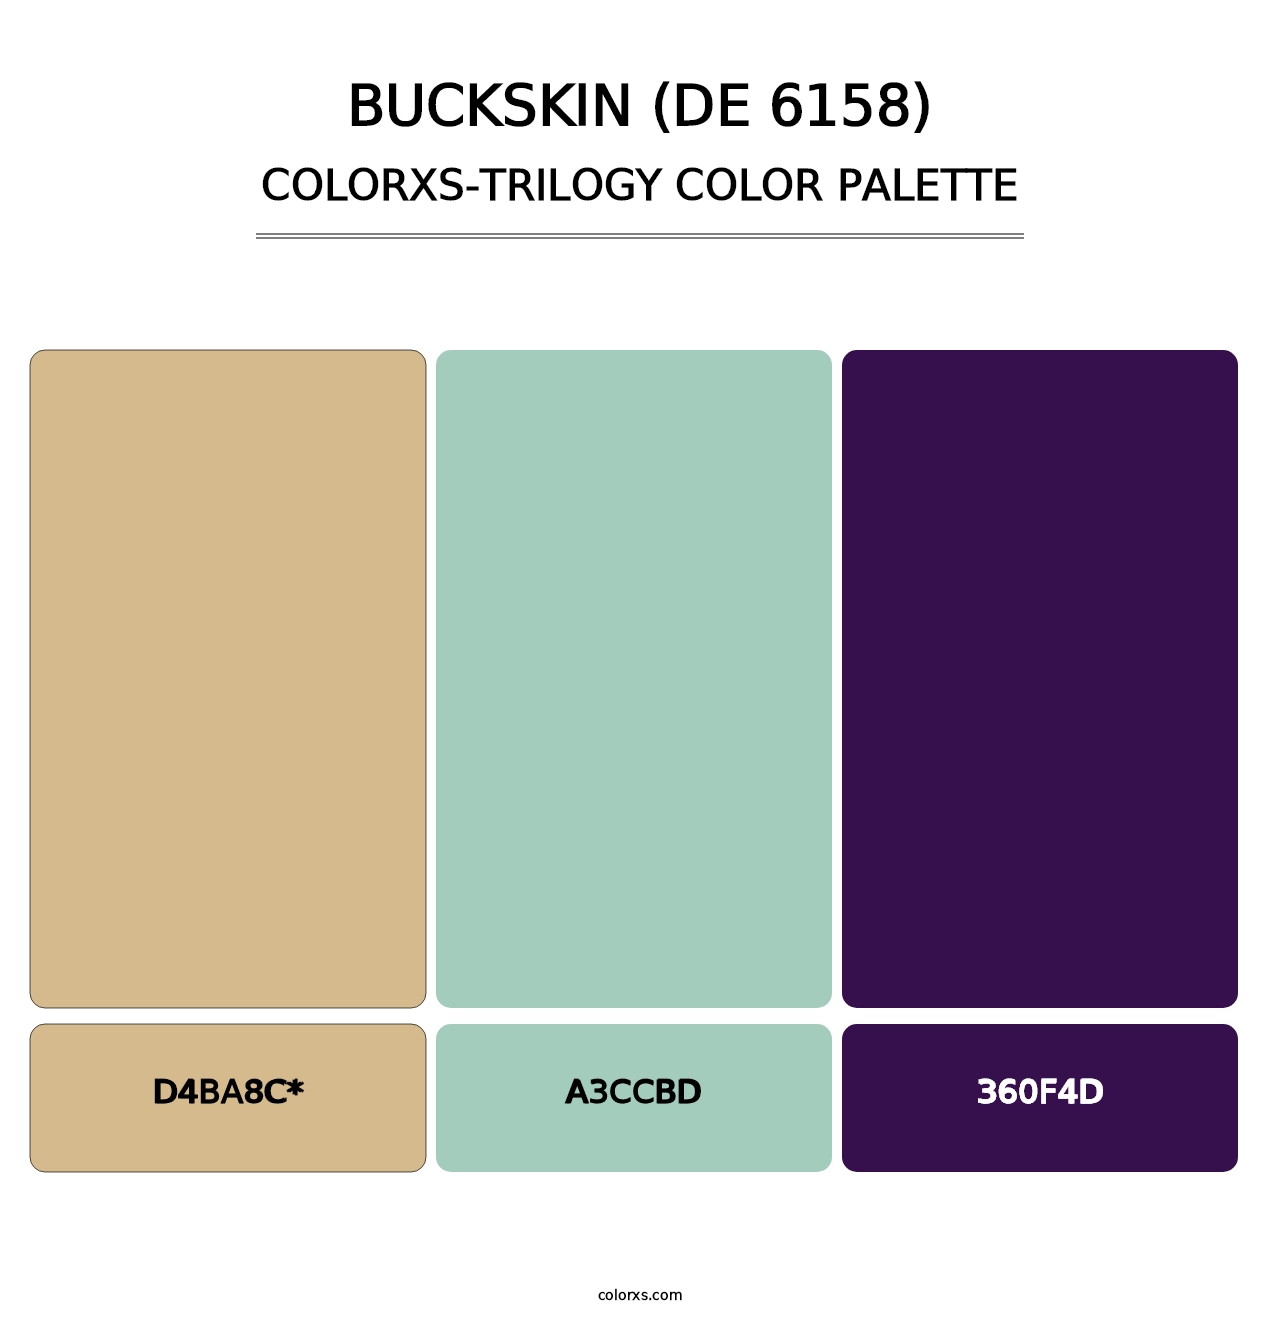 Buckskin (DE 6158) - Colorxs Trilogy Palette